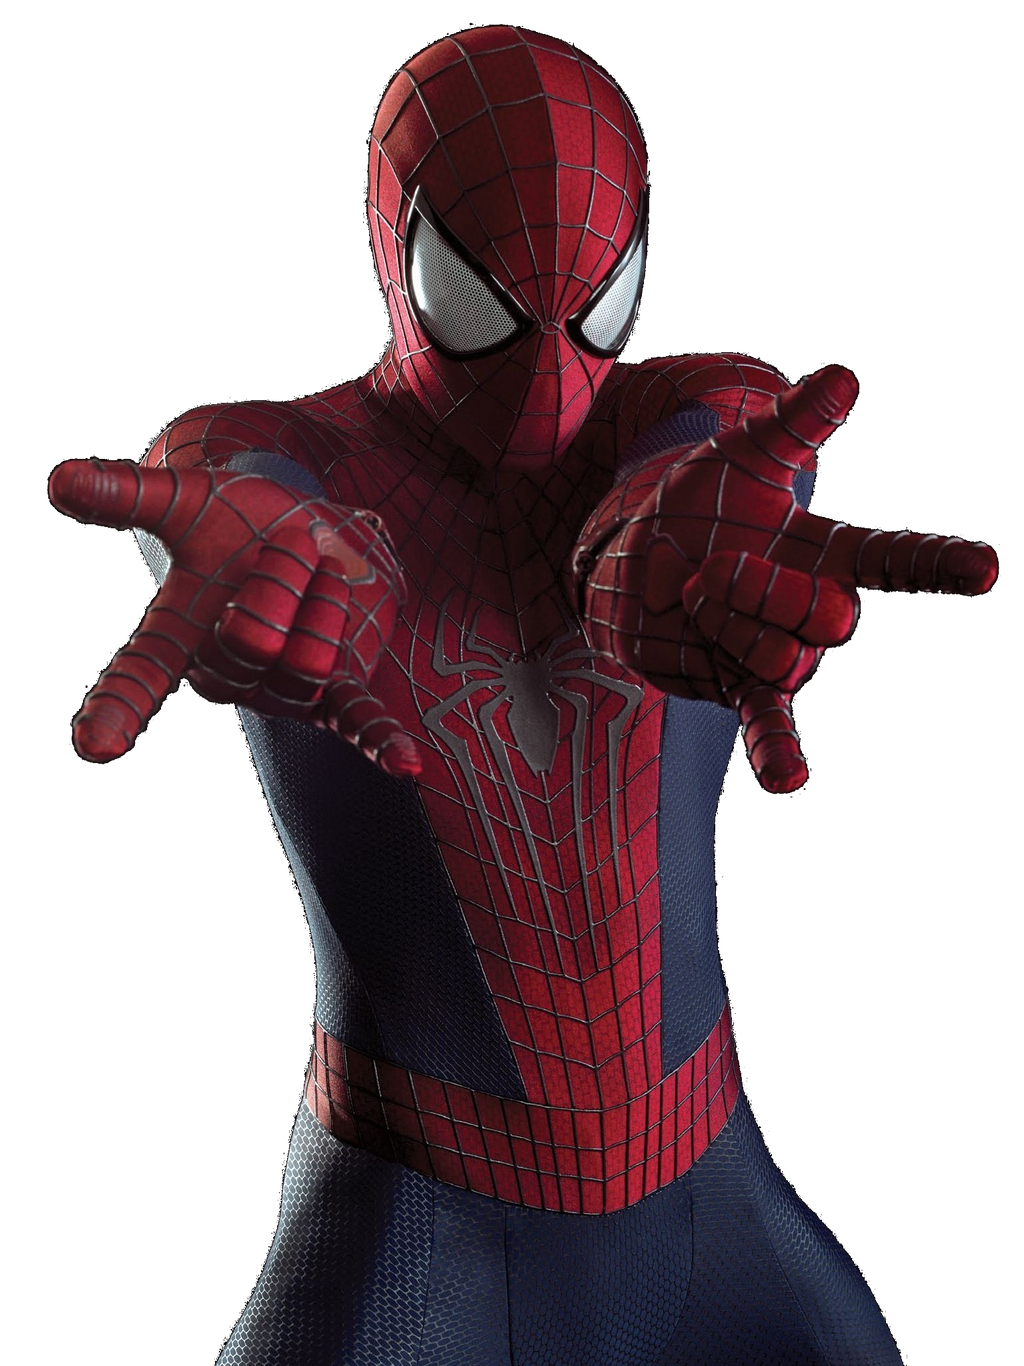 The Amazing Spider-Man 2 - Spider render